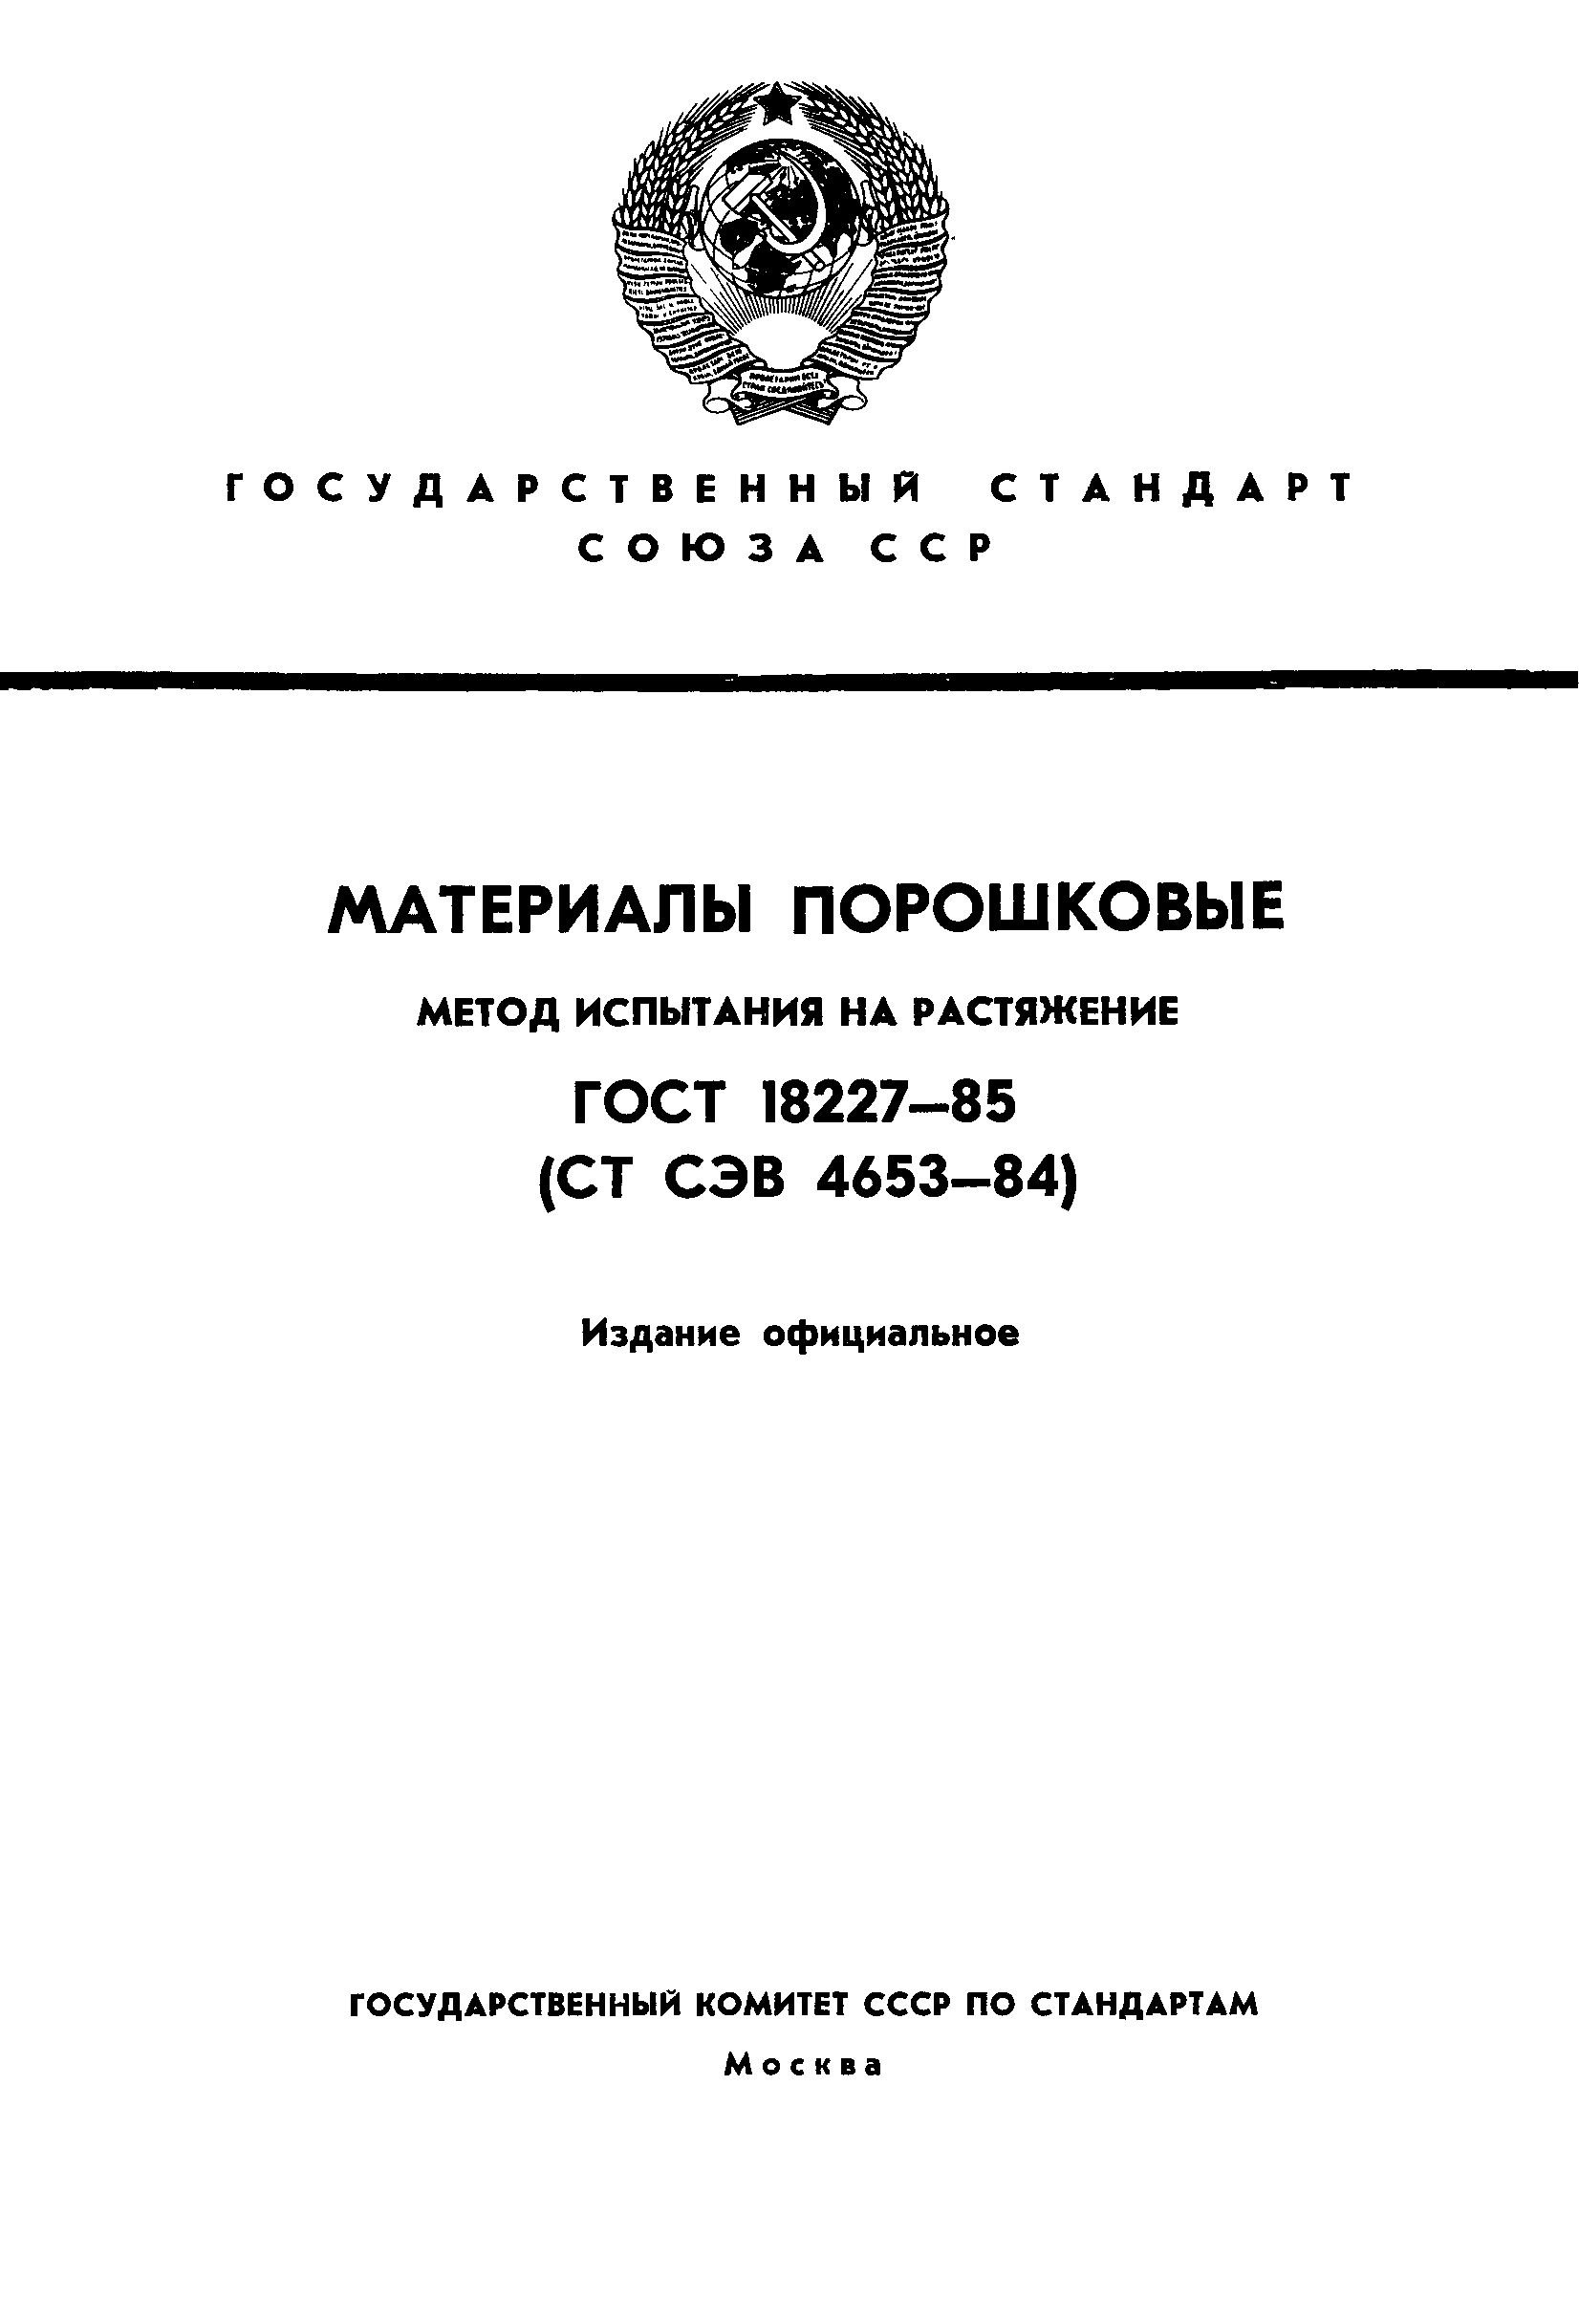  18227-85.  1